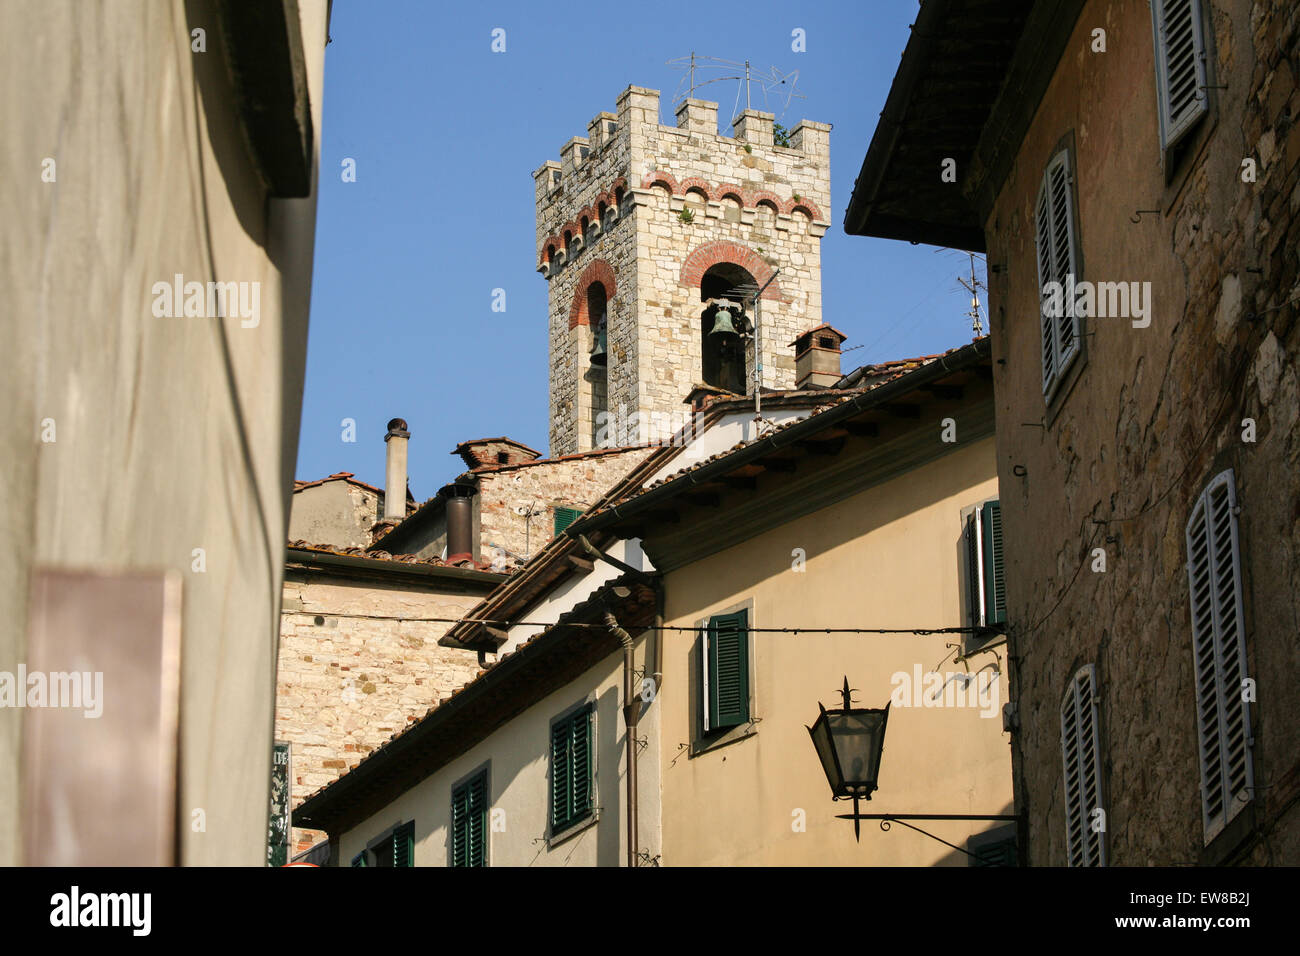 Kirche Glockenturm von der Hauptstraße im Zentrum von "Radda in Chianti", eine schöne kleine Stadt und eine berühmte Region bekannt für seinen Wein Chianti in der Toskana. Italien. Juni. Stockfoto